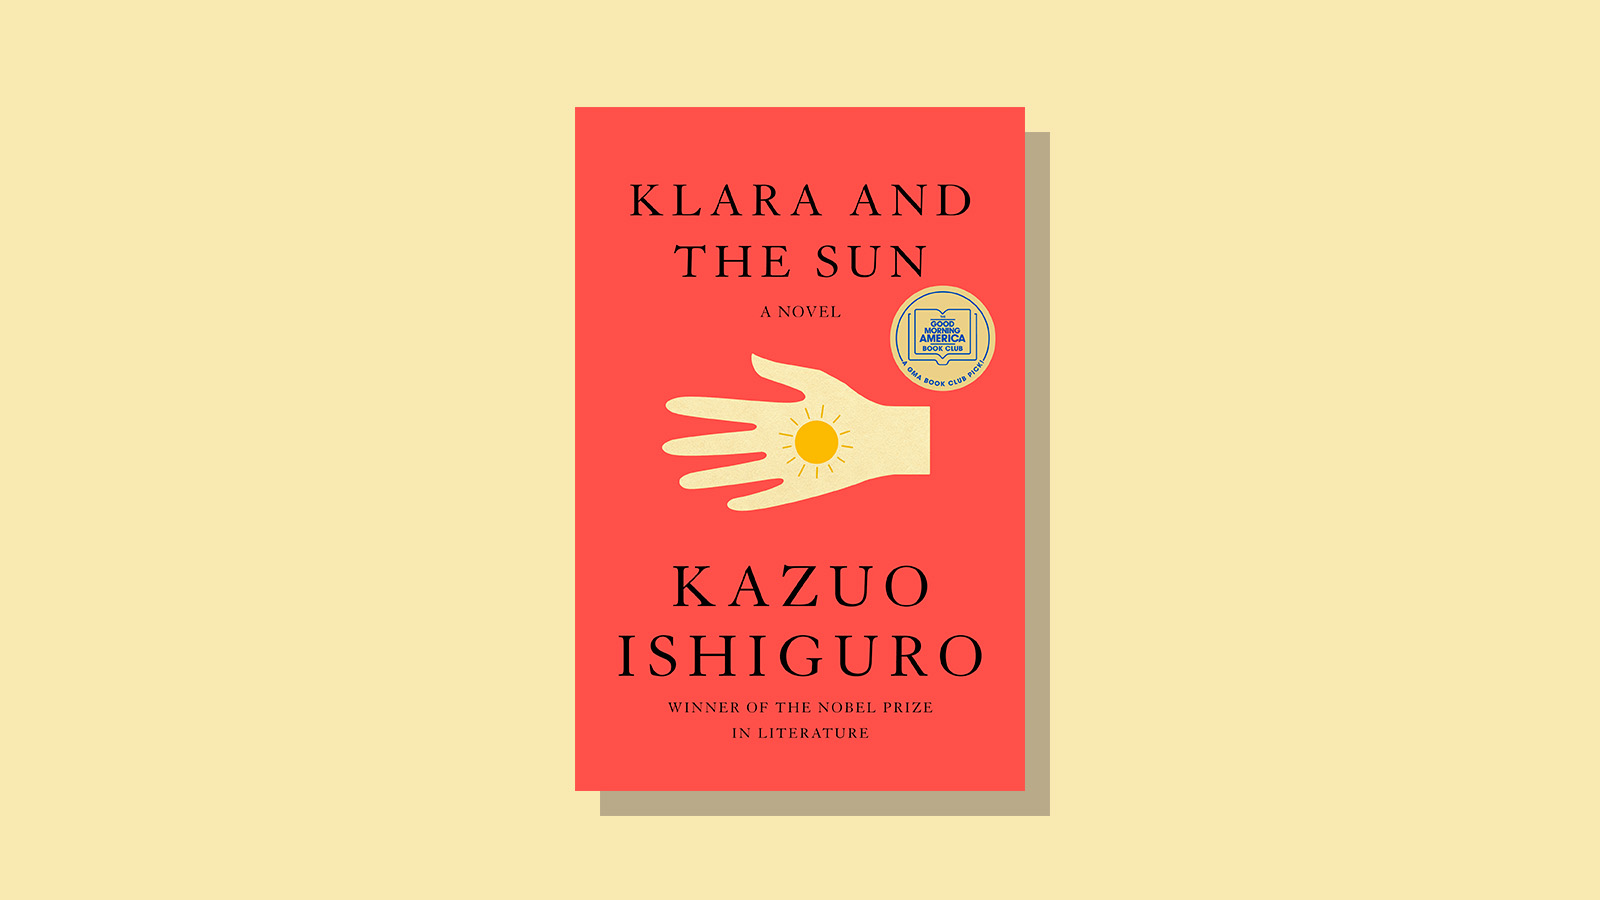 'Klara and the Sun' by Kazuo Ishiguro